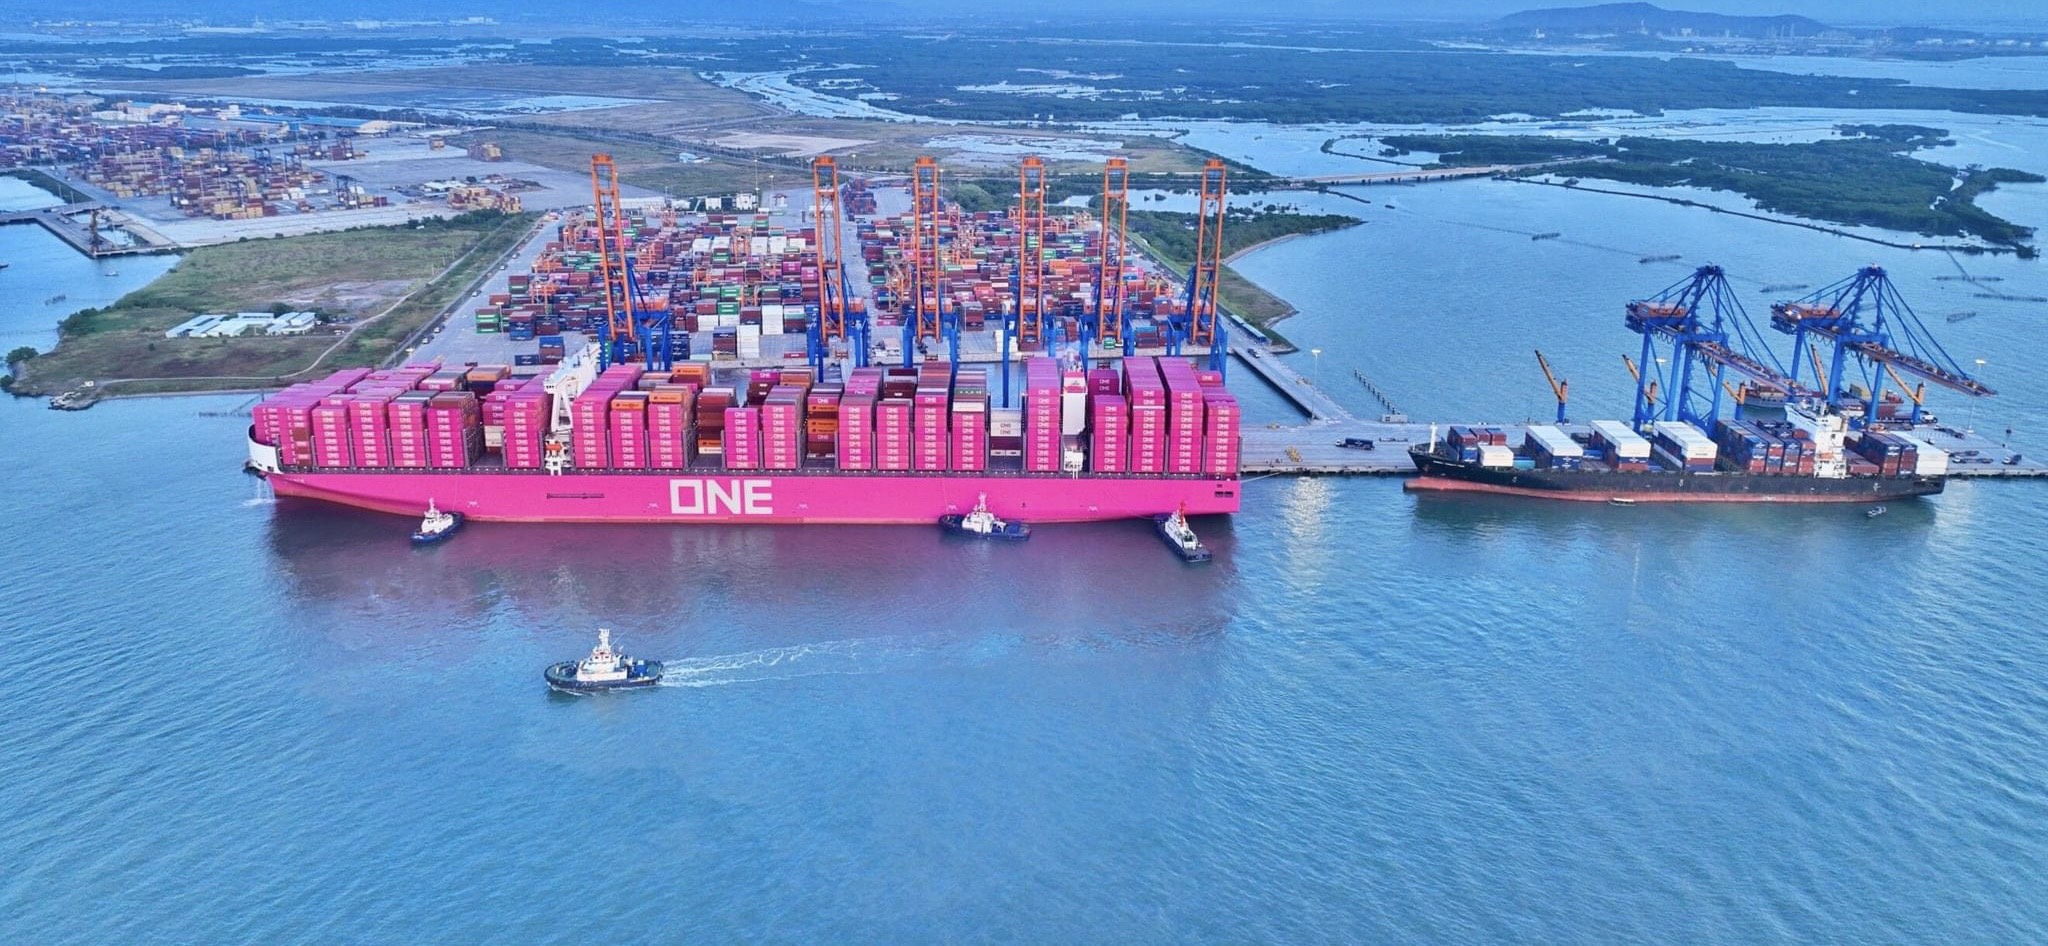  Siêu tàu ONE INTELLIGENCE mang màu hồng đầy ấn tượng làm rực rỡ toàn cảng Gemalink vào sáng mùng 1 Tết